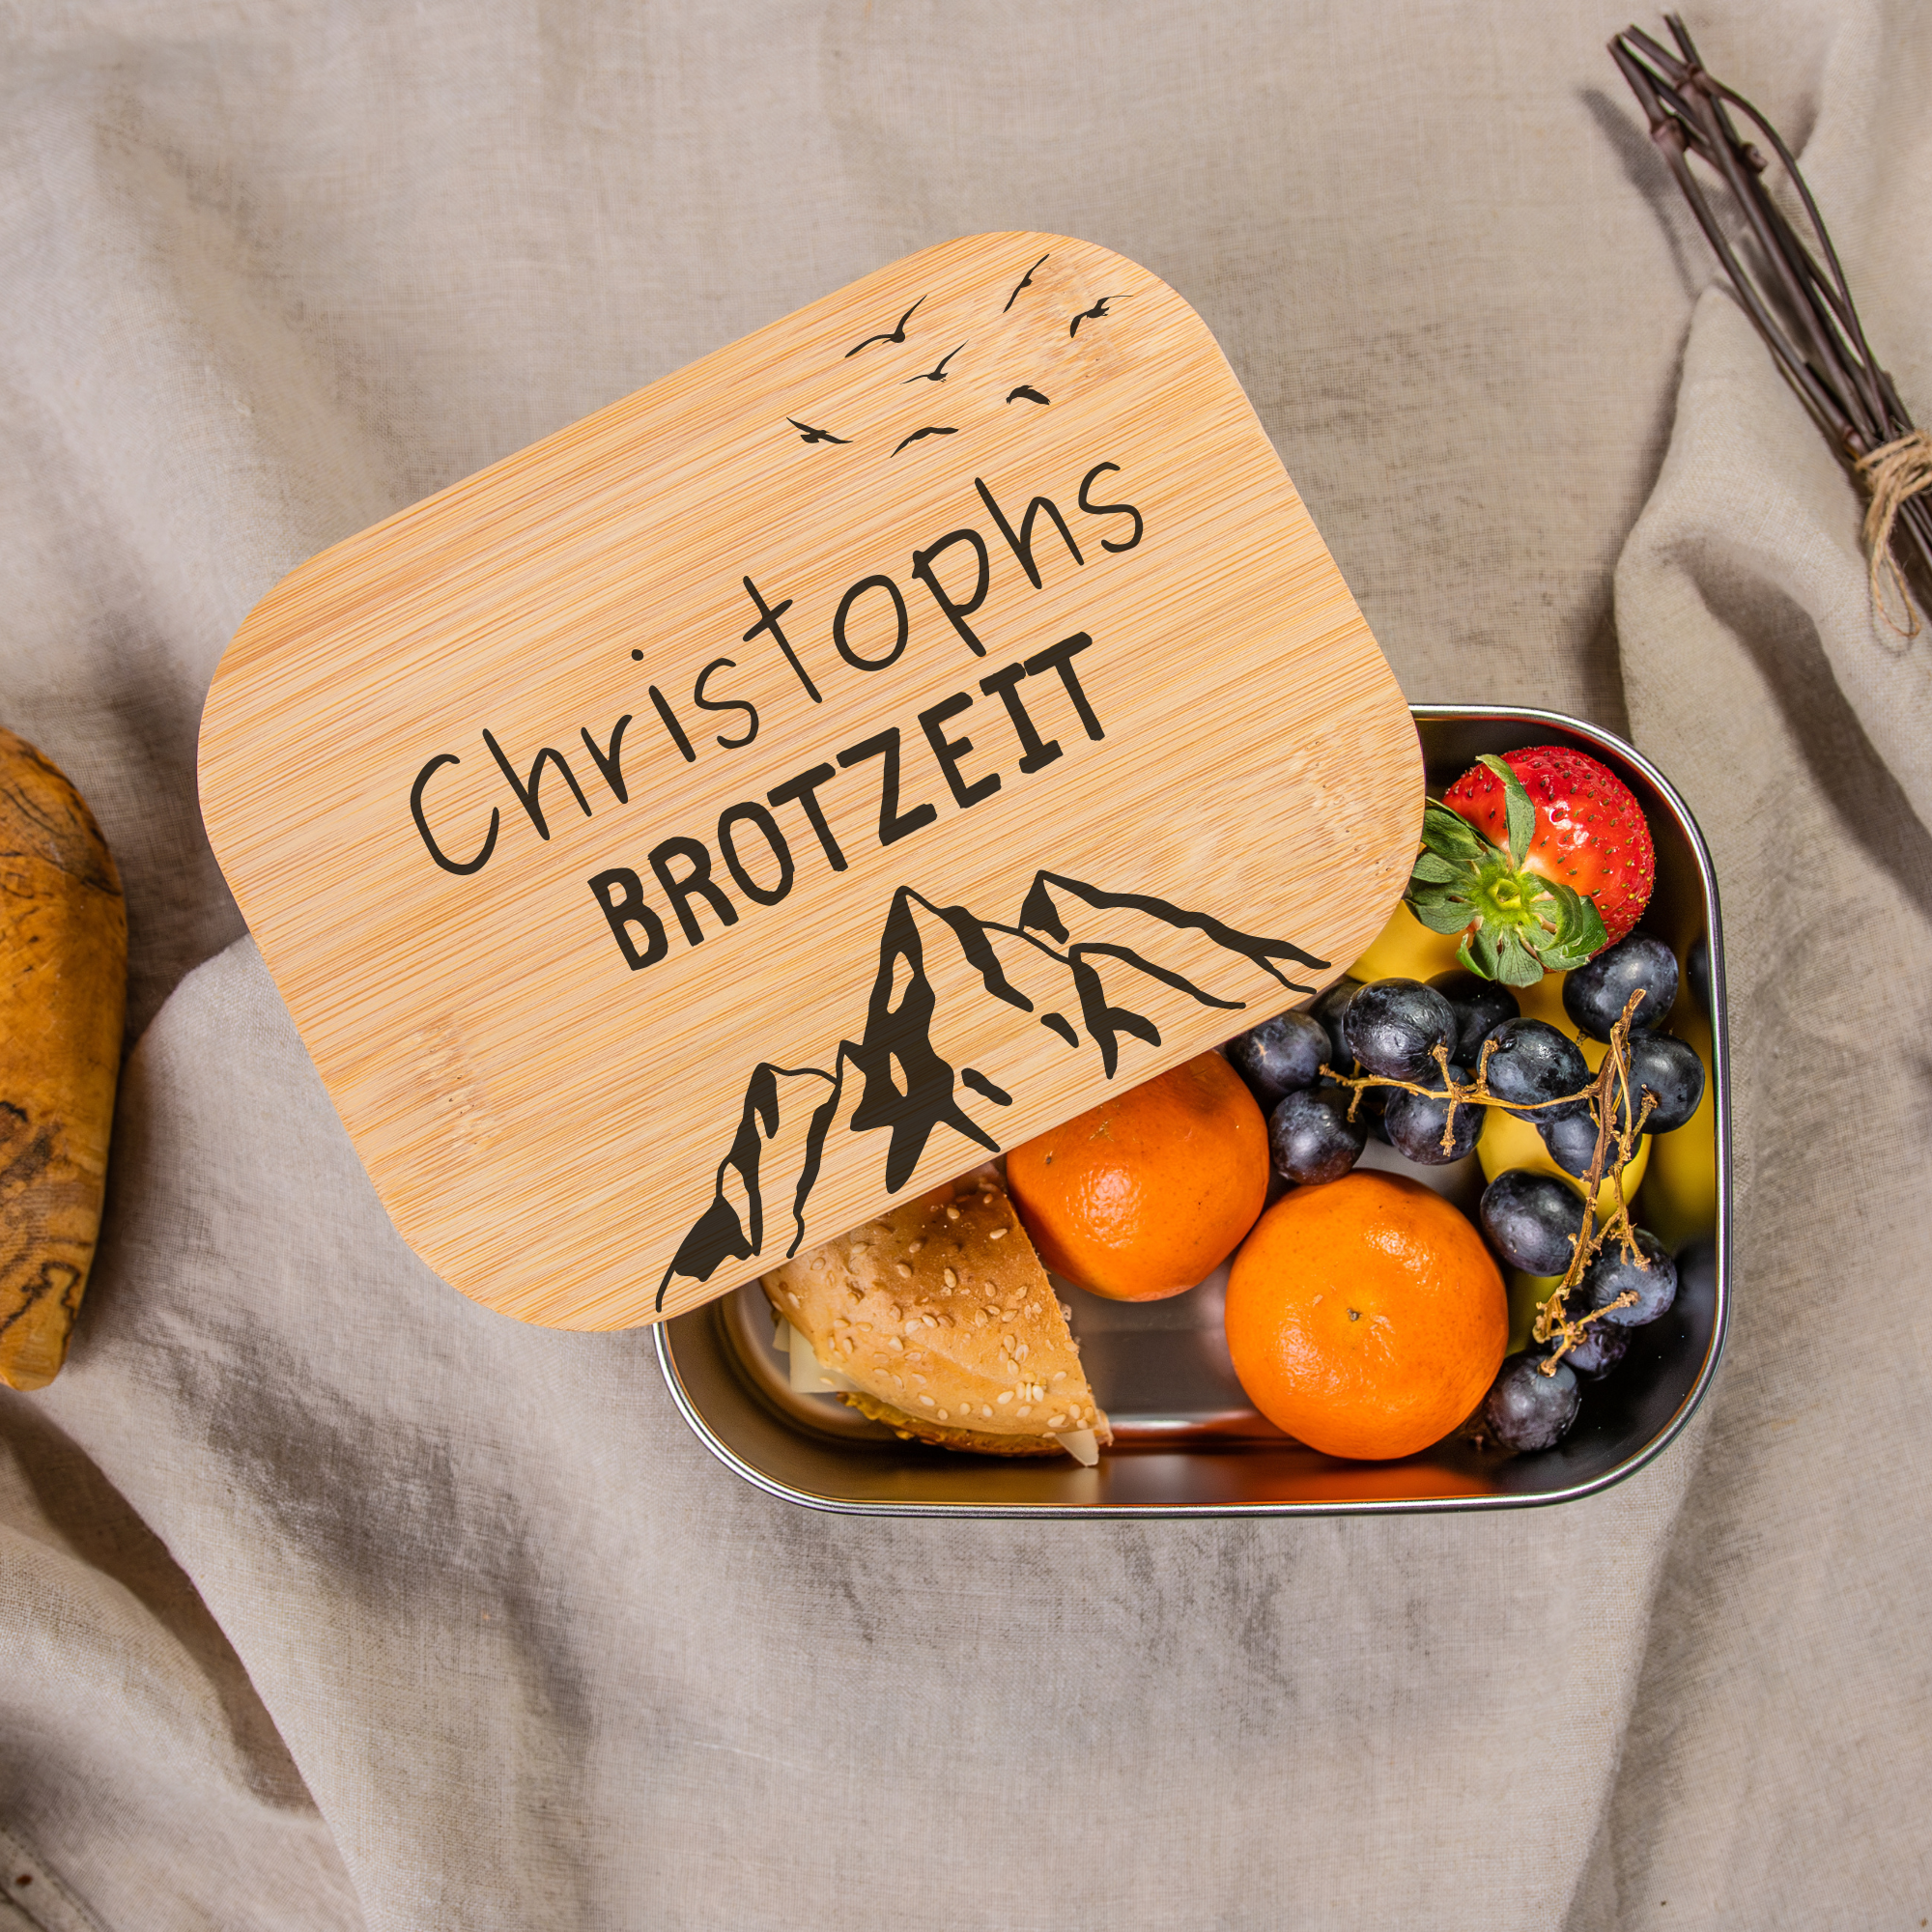 Brotdose "Brotzeit" personalisiert, Lunchbox aus Edelstahl